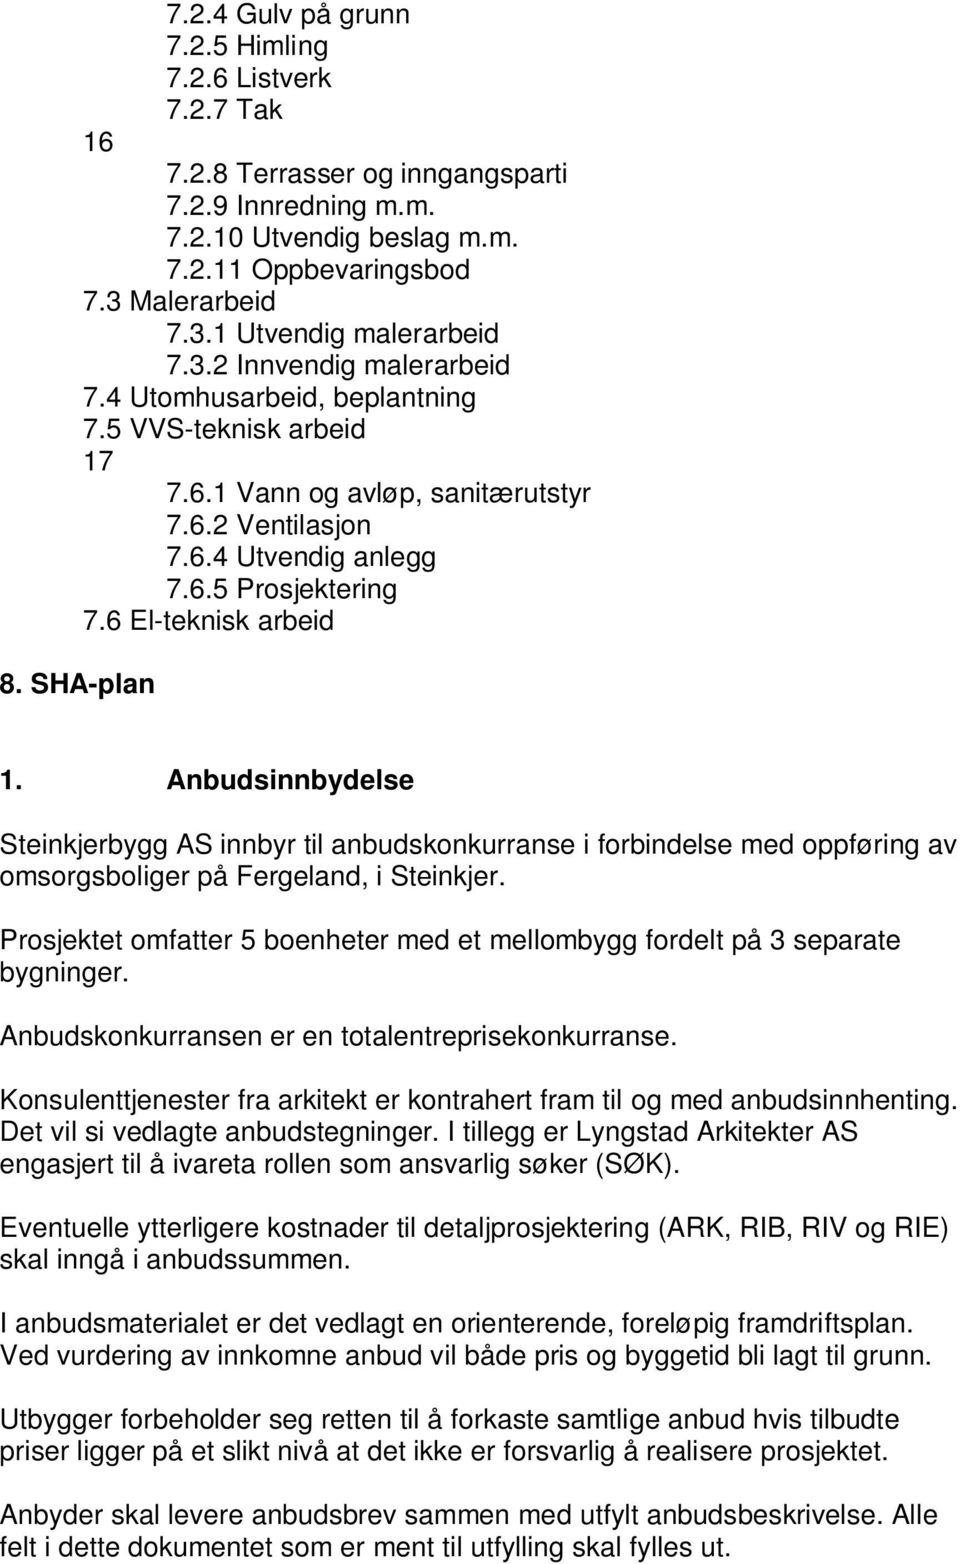 6 El-teknisk arbeid 8. SHA-plan 1. Anbudsinnbydelse Steinkjerbygg AS innbyr til anbudskonkurranse i forbindelse med oppføring av omsorgsboliger på Fergeland, i Steinkjer.